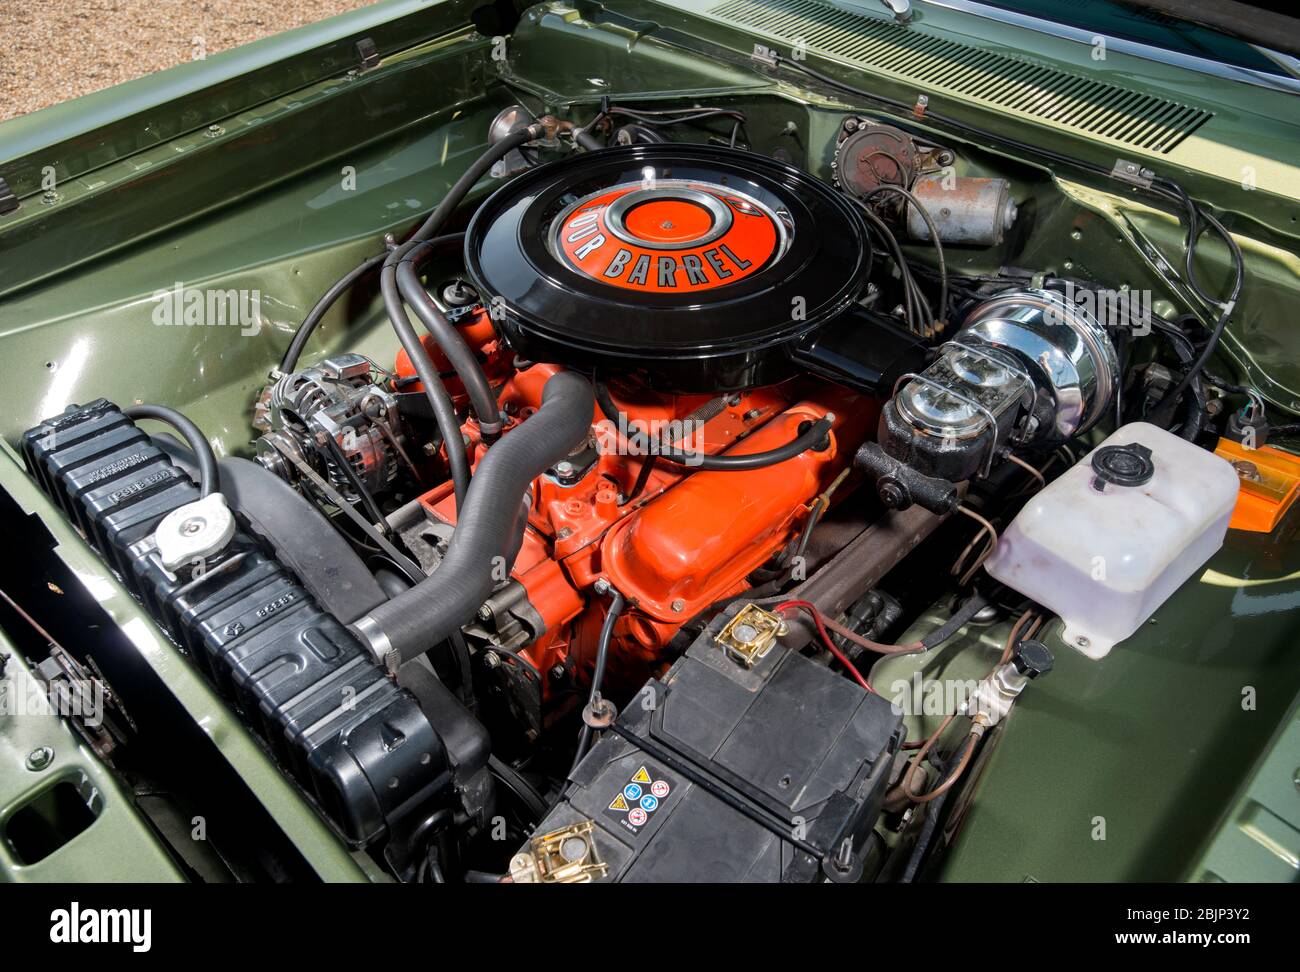 1970 Dodge Dart Swinger klassischen amerikanischen Muskel Auto  Stockfotografie - Alamy